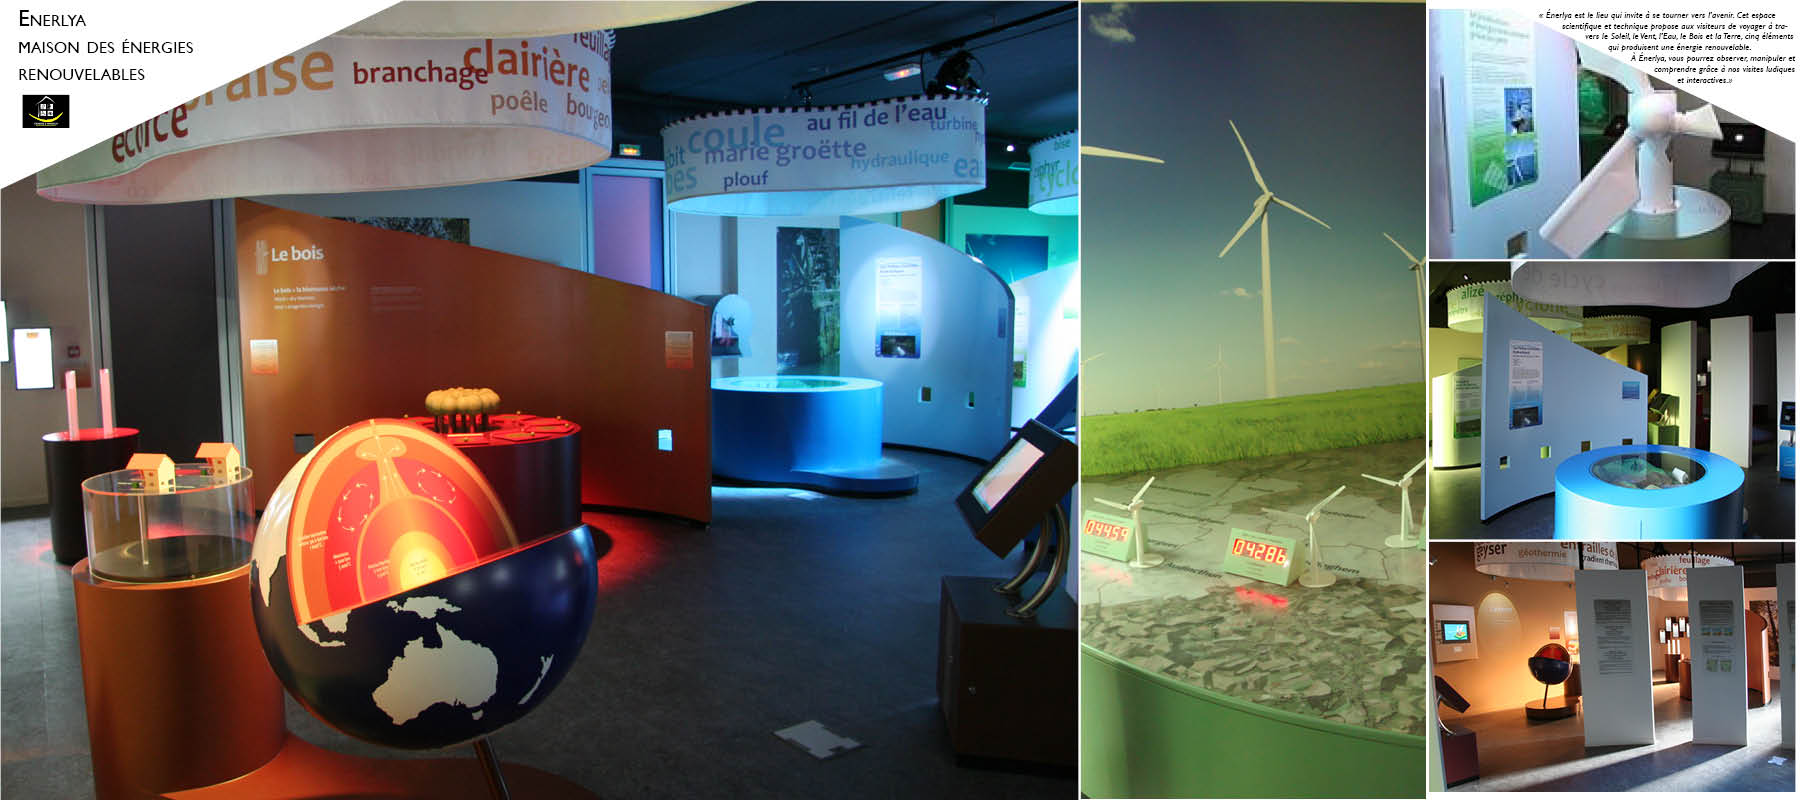 ENERLYA - Maison des énergies renouvelables